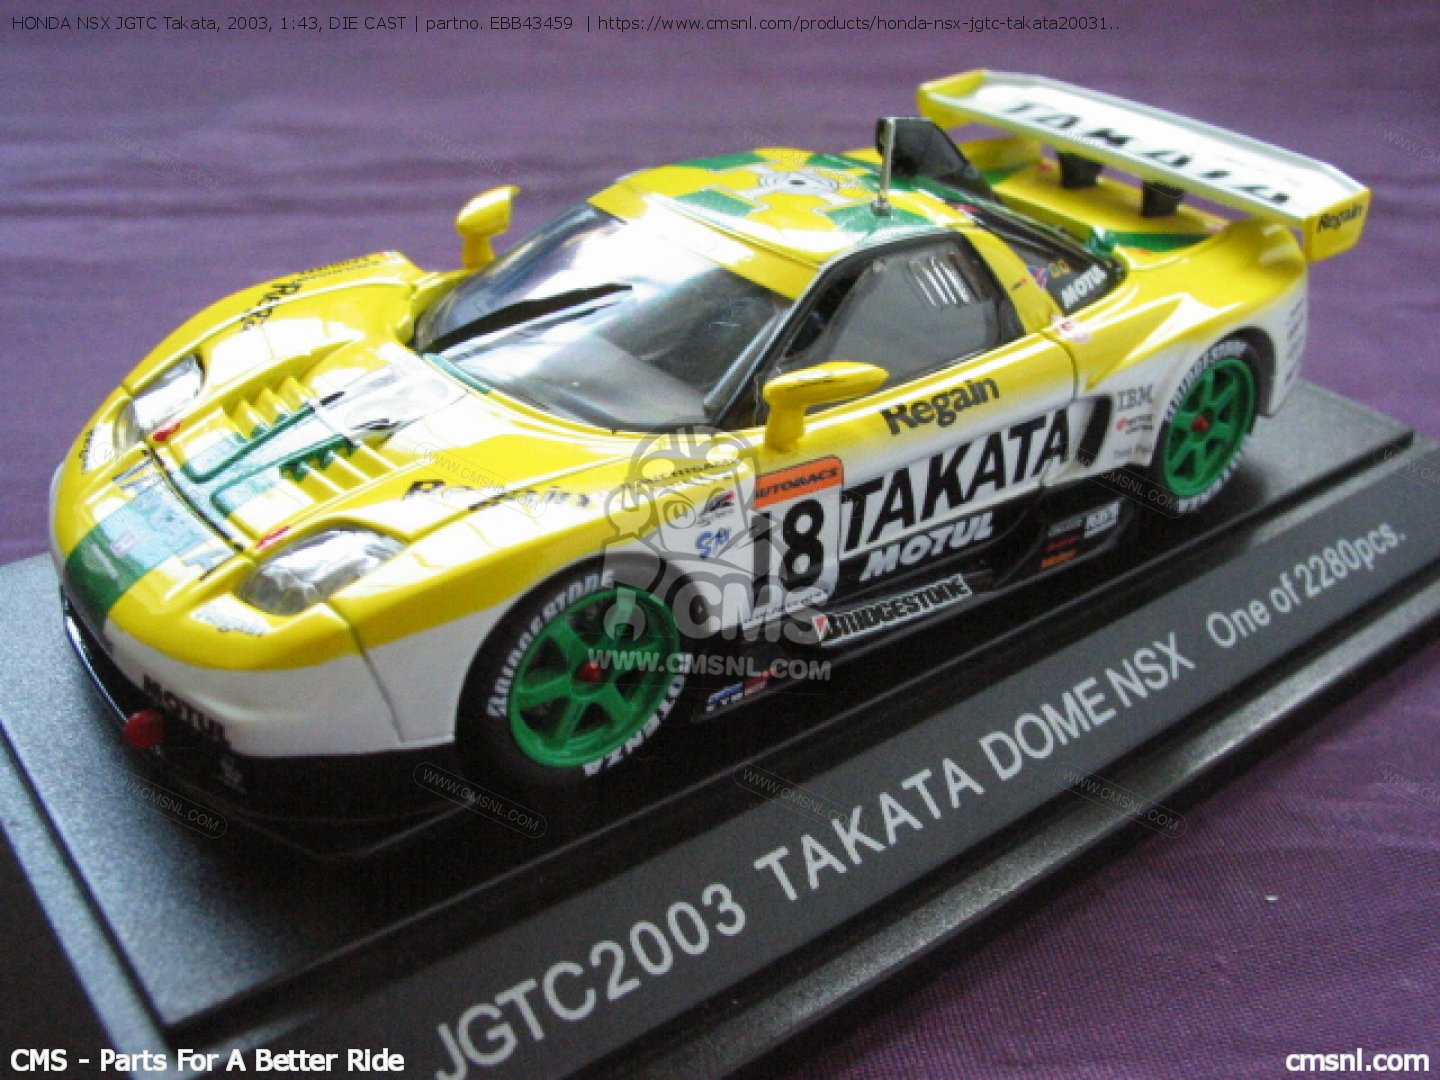 HONDA NSX JGTC Takata, 2003, 1:43, DIE CAST